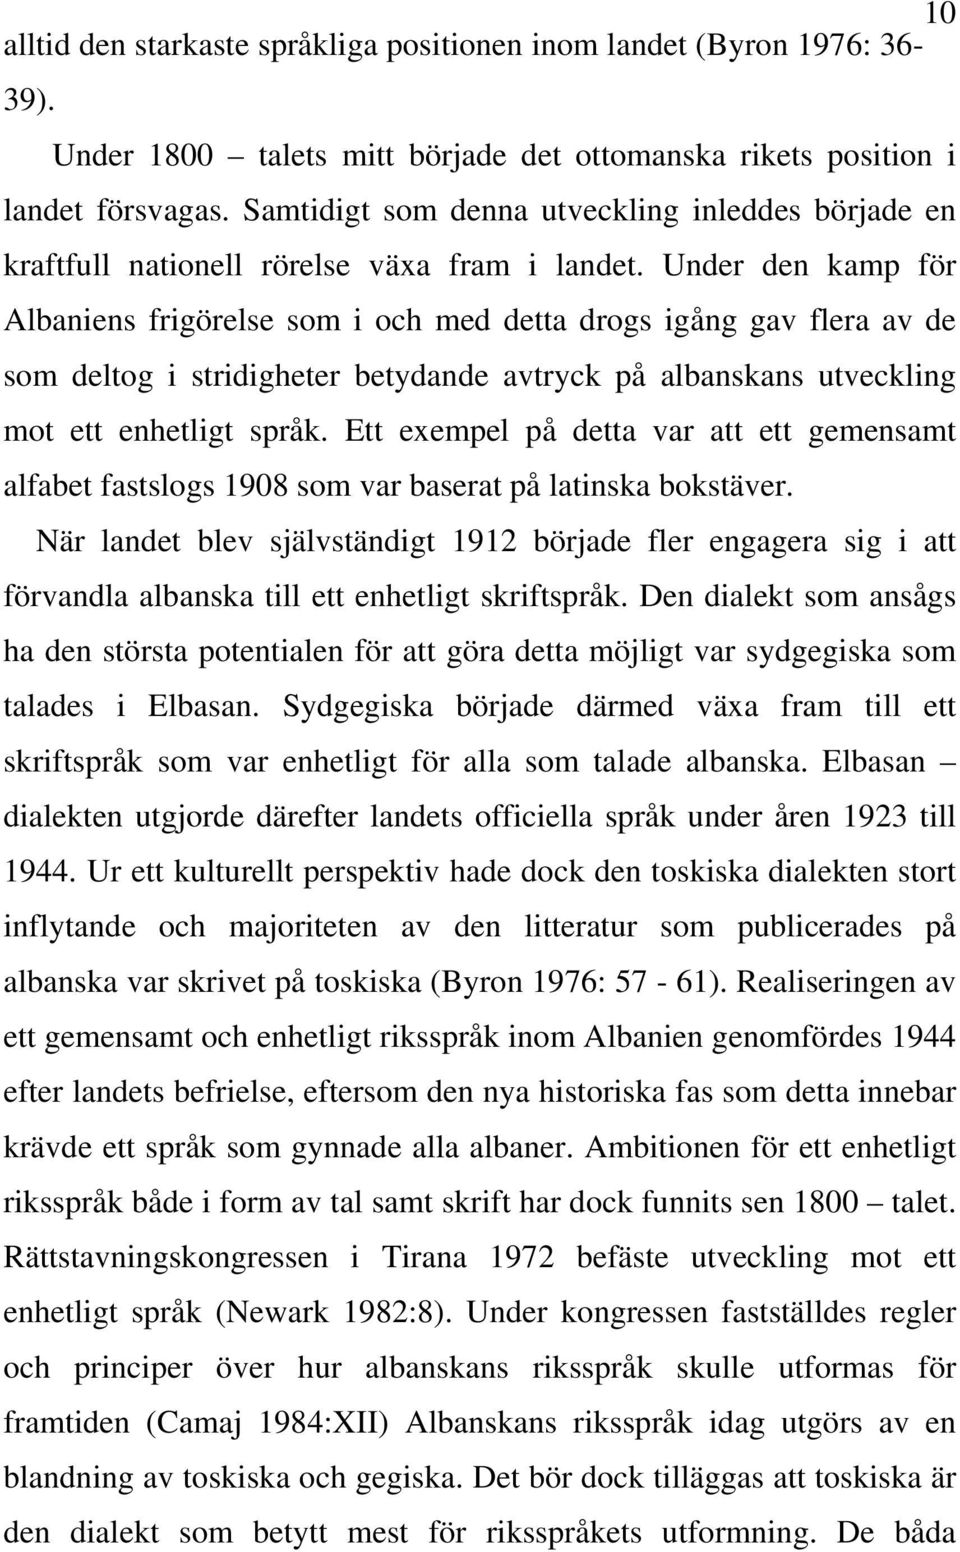 Under den kamp för Albaniens frigörelse som i och med detta drogs igång gav flera av de som deltog i stridigheter betydande avtryck på albanskans utveckling mot ett enhetligt språk.